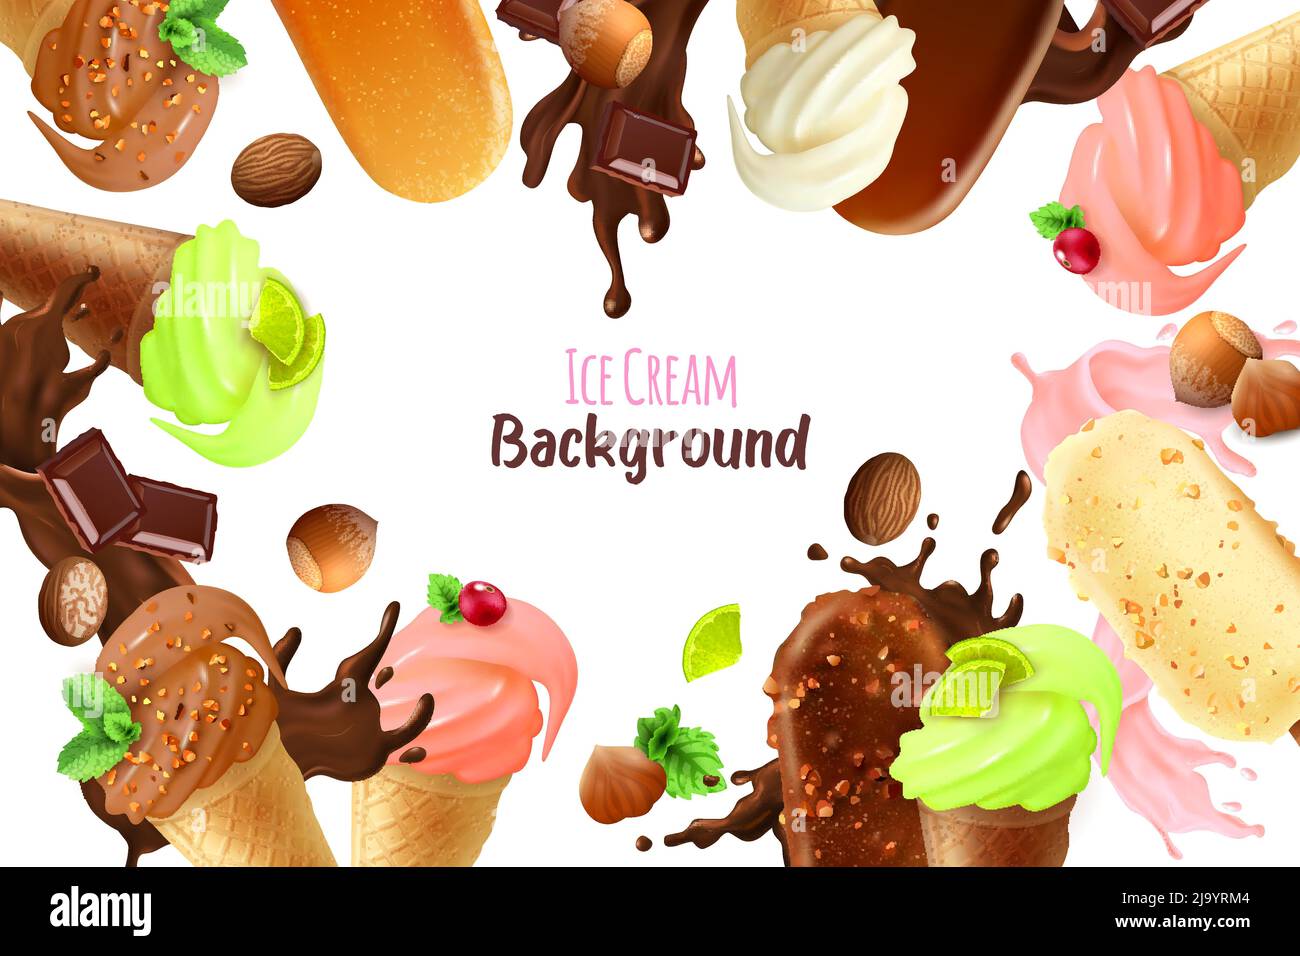 Fond blanc avec cadre composé de différentes variétés et formes de crème glacée illustration réaliste de vecteur Illustration de Vecteur